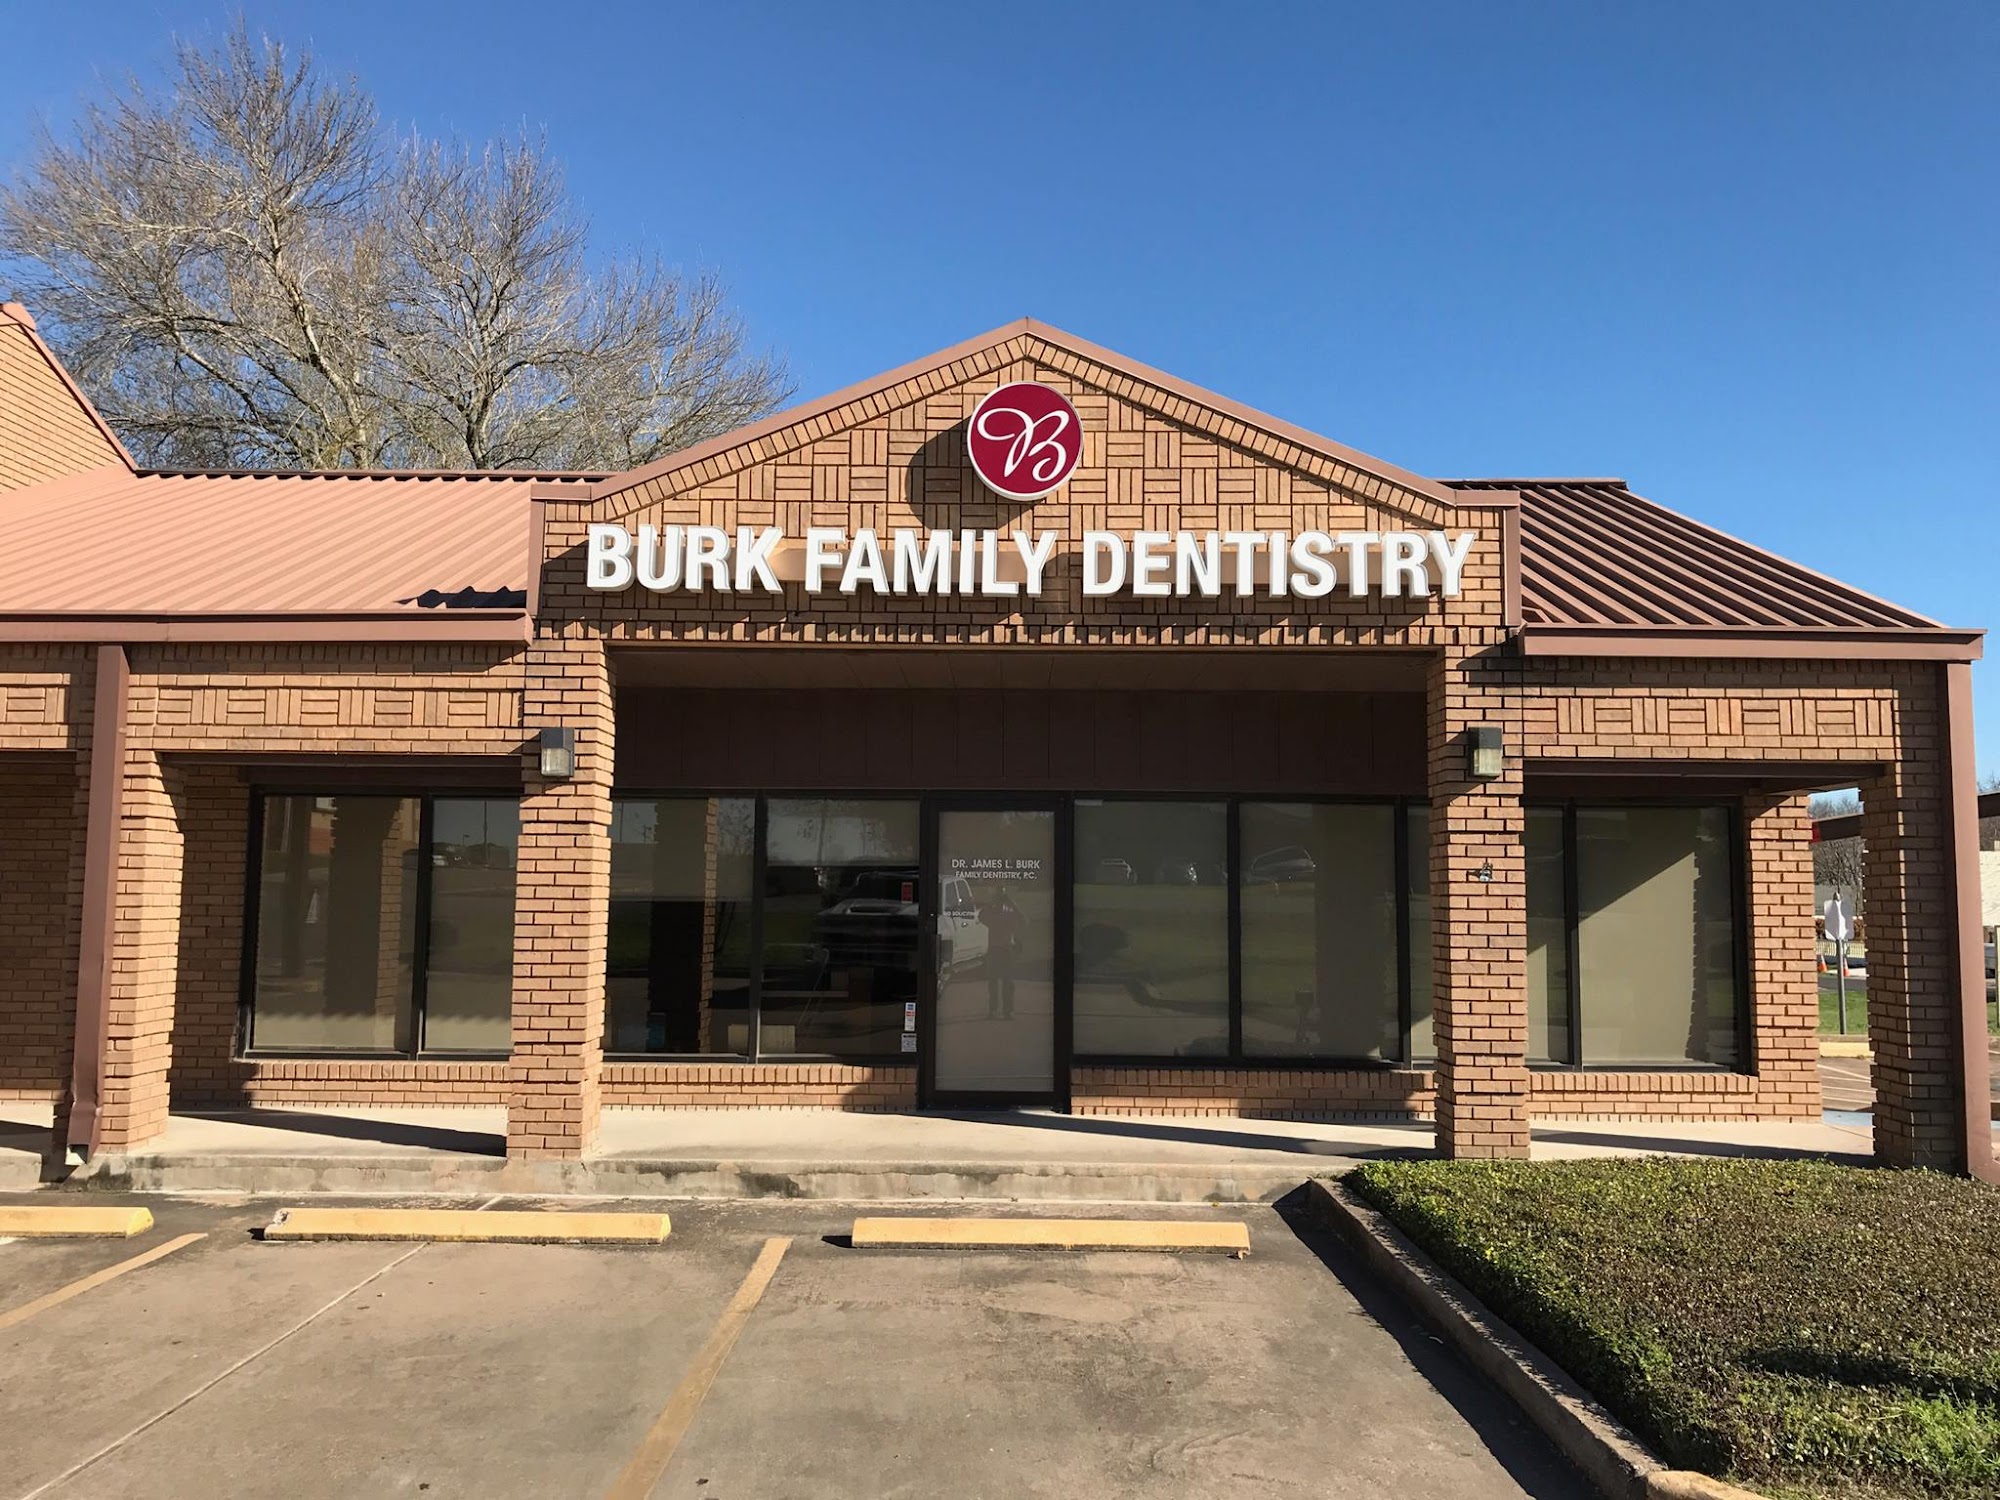 Burk Family Dentistry